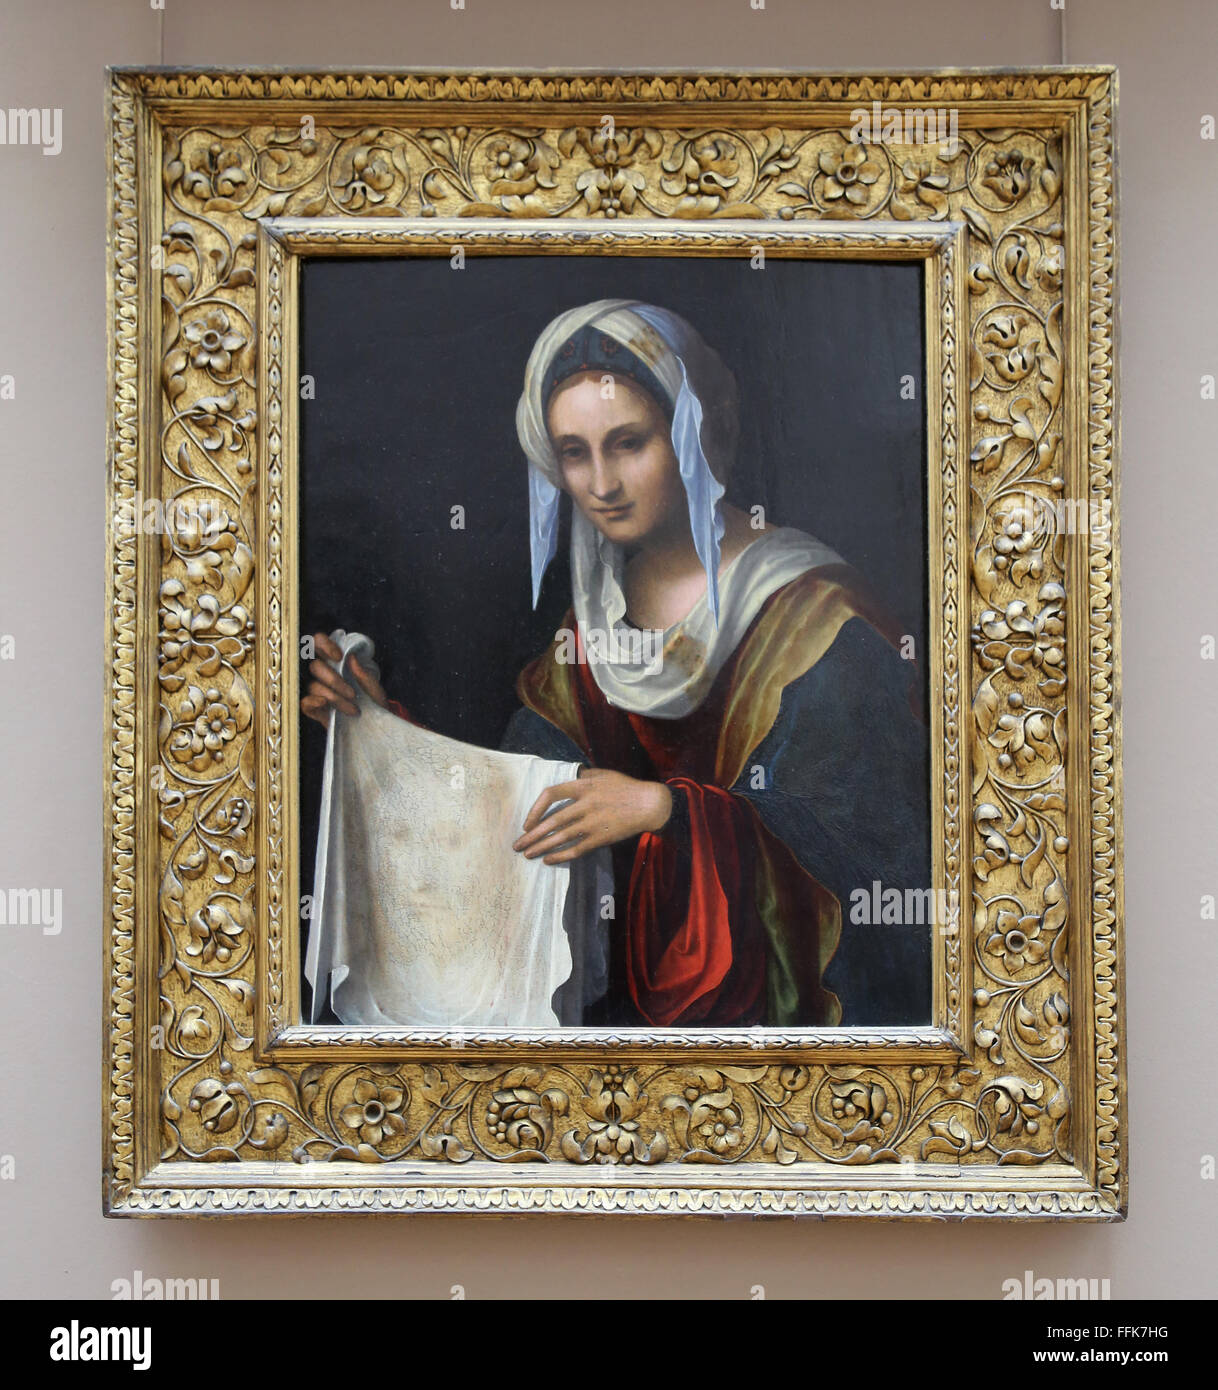 Der Heilige Veronica, 1508 von dem italienischen Maler Lorenzo Costa (1460-1535). Renaissance. Louvre-Museum. Paris. Frankreich. Stockfoto